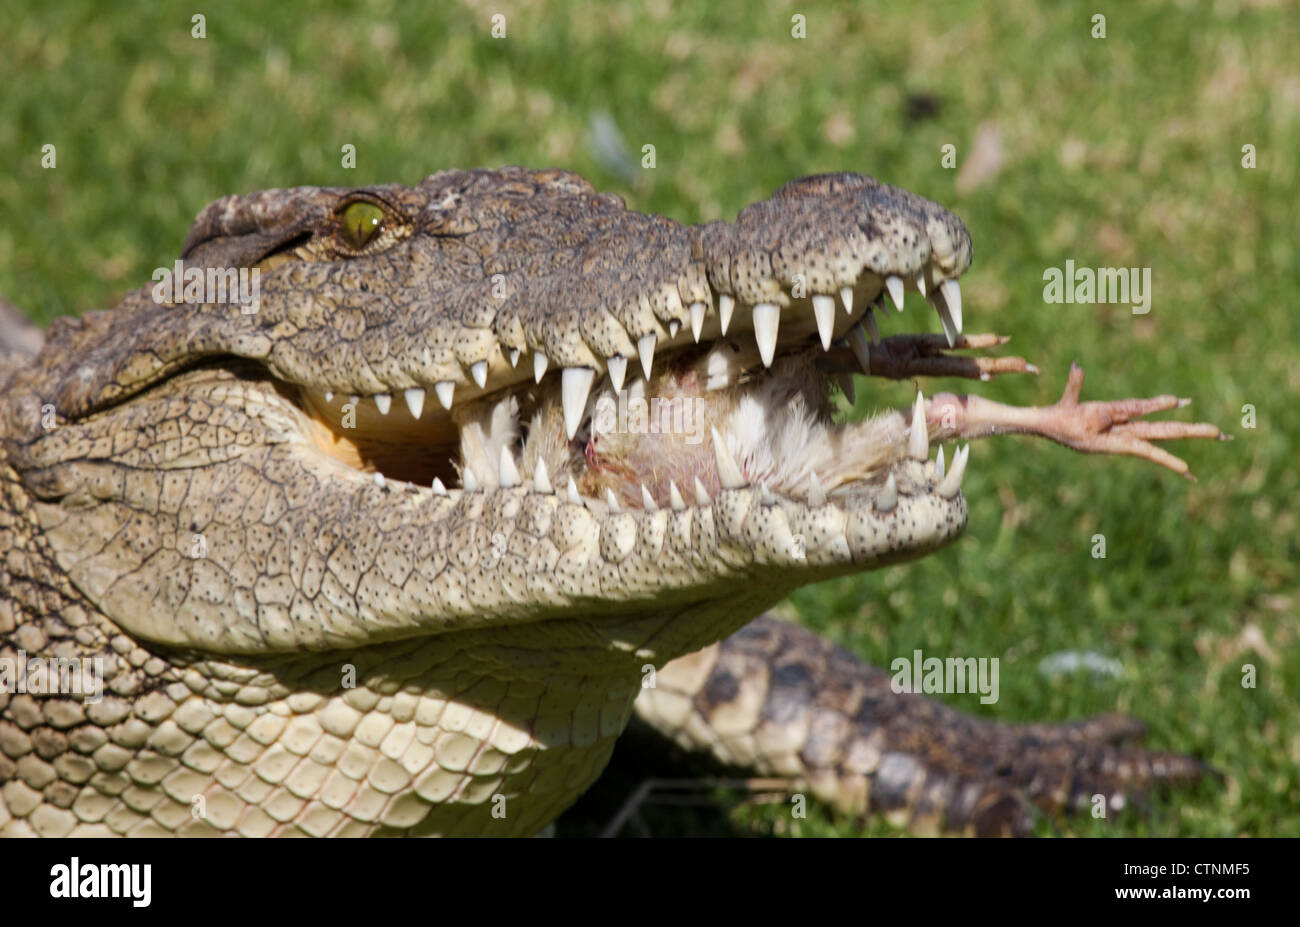 Crocodile du Nil, Crocodylus niloticus, ferme aux crocodiles, Johannesburg, Afrique du Sud Banque D'Images